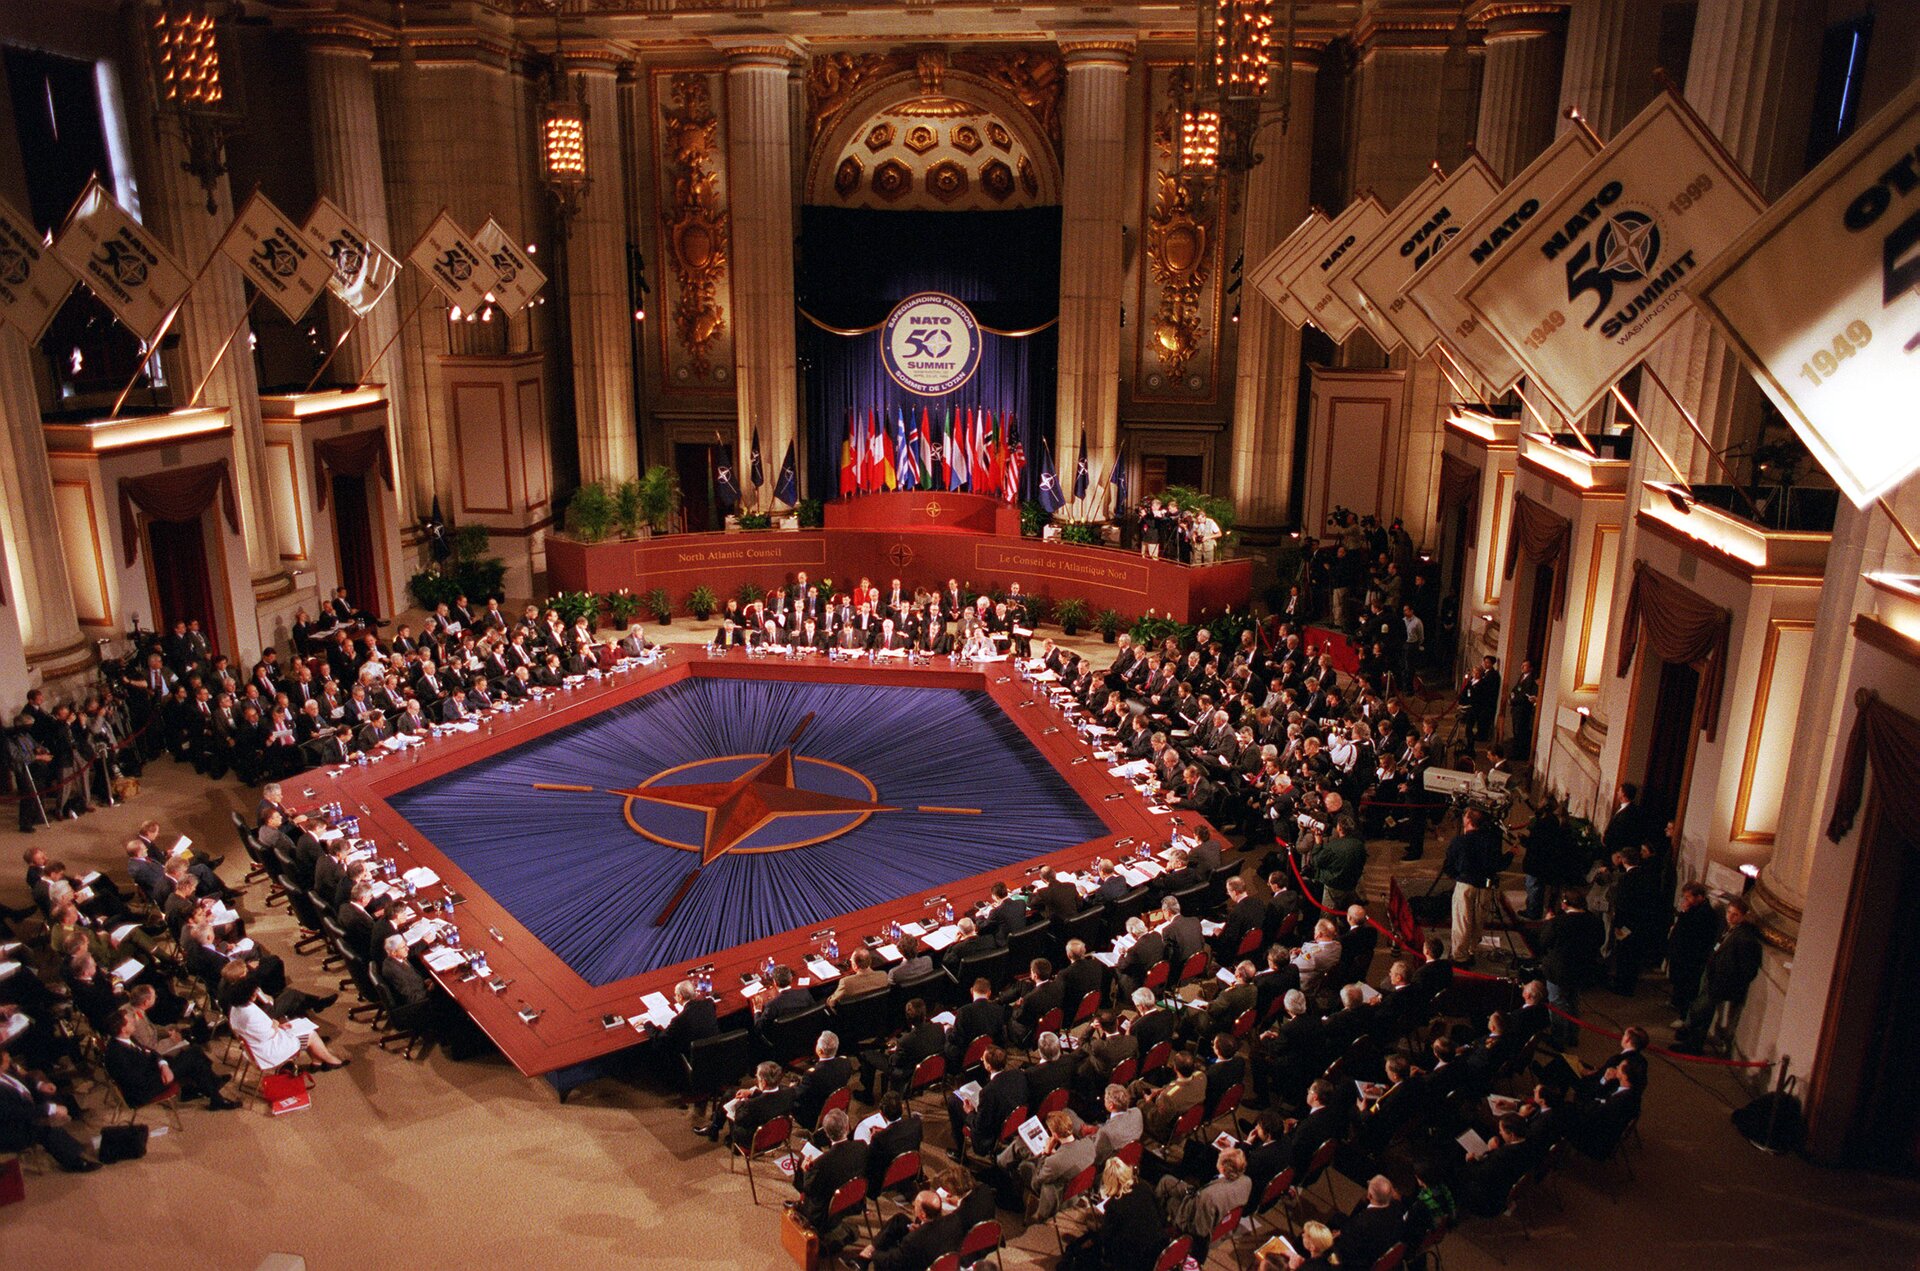 Zdjęcie przedstawia szczyt NATO, zorganizowany w Waszyngtonie w USA w dn. 23‑25 kwietnia 1999.  Szczyt został zwołany m.in. w celu uczczenia 50 rocznicy powołania Paktu Północnoatlantyckiego - w części centralnej widoczny napis z cyfrą 50 i flagi państw, które przynależą do NATO. Poniżej  podest, na którym widoczni są ludzie i poustawiane doniczki z krzewami. W centralnej części widoczna flaga NATO (w odcieniu błękitu, symbolizuje Ocean Atlantycki; pierścień symbolizujący jedność oraz na środku różę kierunkową oznaczającą bezpieczeństwo). Jest rozłożona, tworzy pięciokąt, wokół którego siedzą zaproszeni przedstawiciele państw NATO. Pozostali goście siedzą po bokach sali. Po bokach sali znajduję się filary pomiędzy którymi na wysokości pierwszego piętra są balkony. Na nich umiejscowione są flagi, które zwisają w kierunku środka sali. Na flagach znajdują się daty 1949,1999, oraz napisy NATO, Summit.